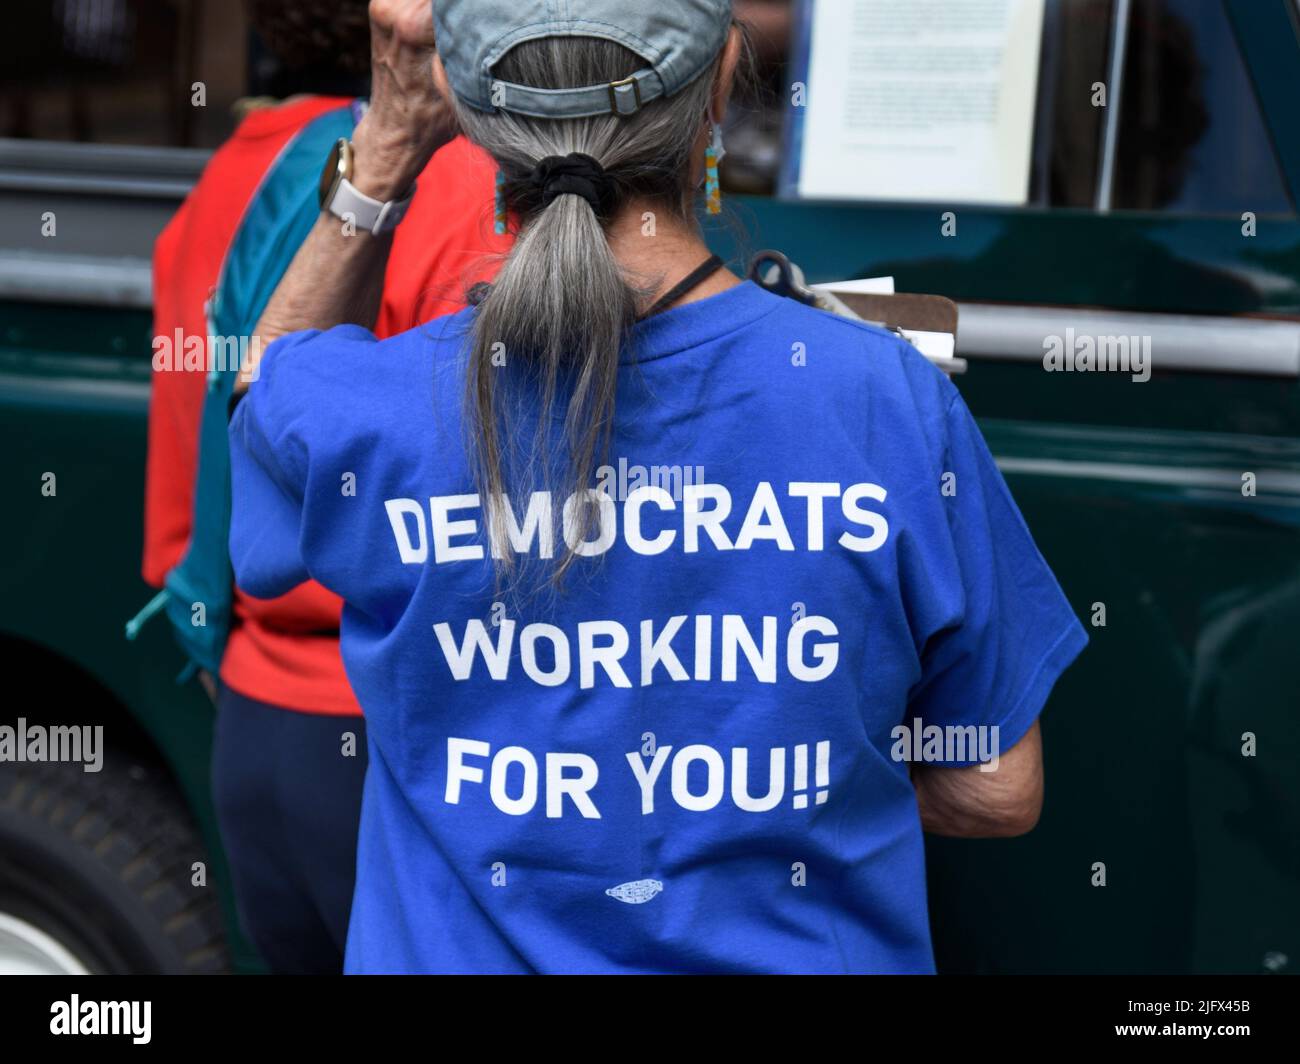 Une femme portant un T-shirt exhortant les électeurs à voter pour les candidats démocrates aux élections à venir assiste à un spectacle de voiture d'époque à Santa Fe, au Nouveau-Mexique Banque D'Images